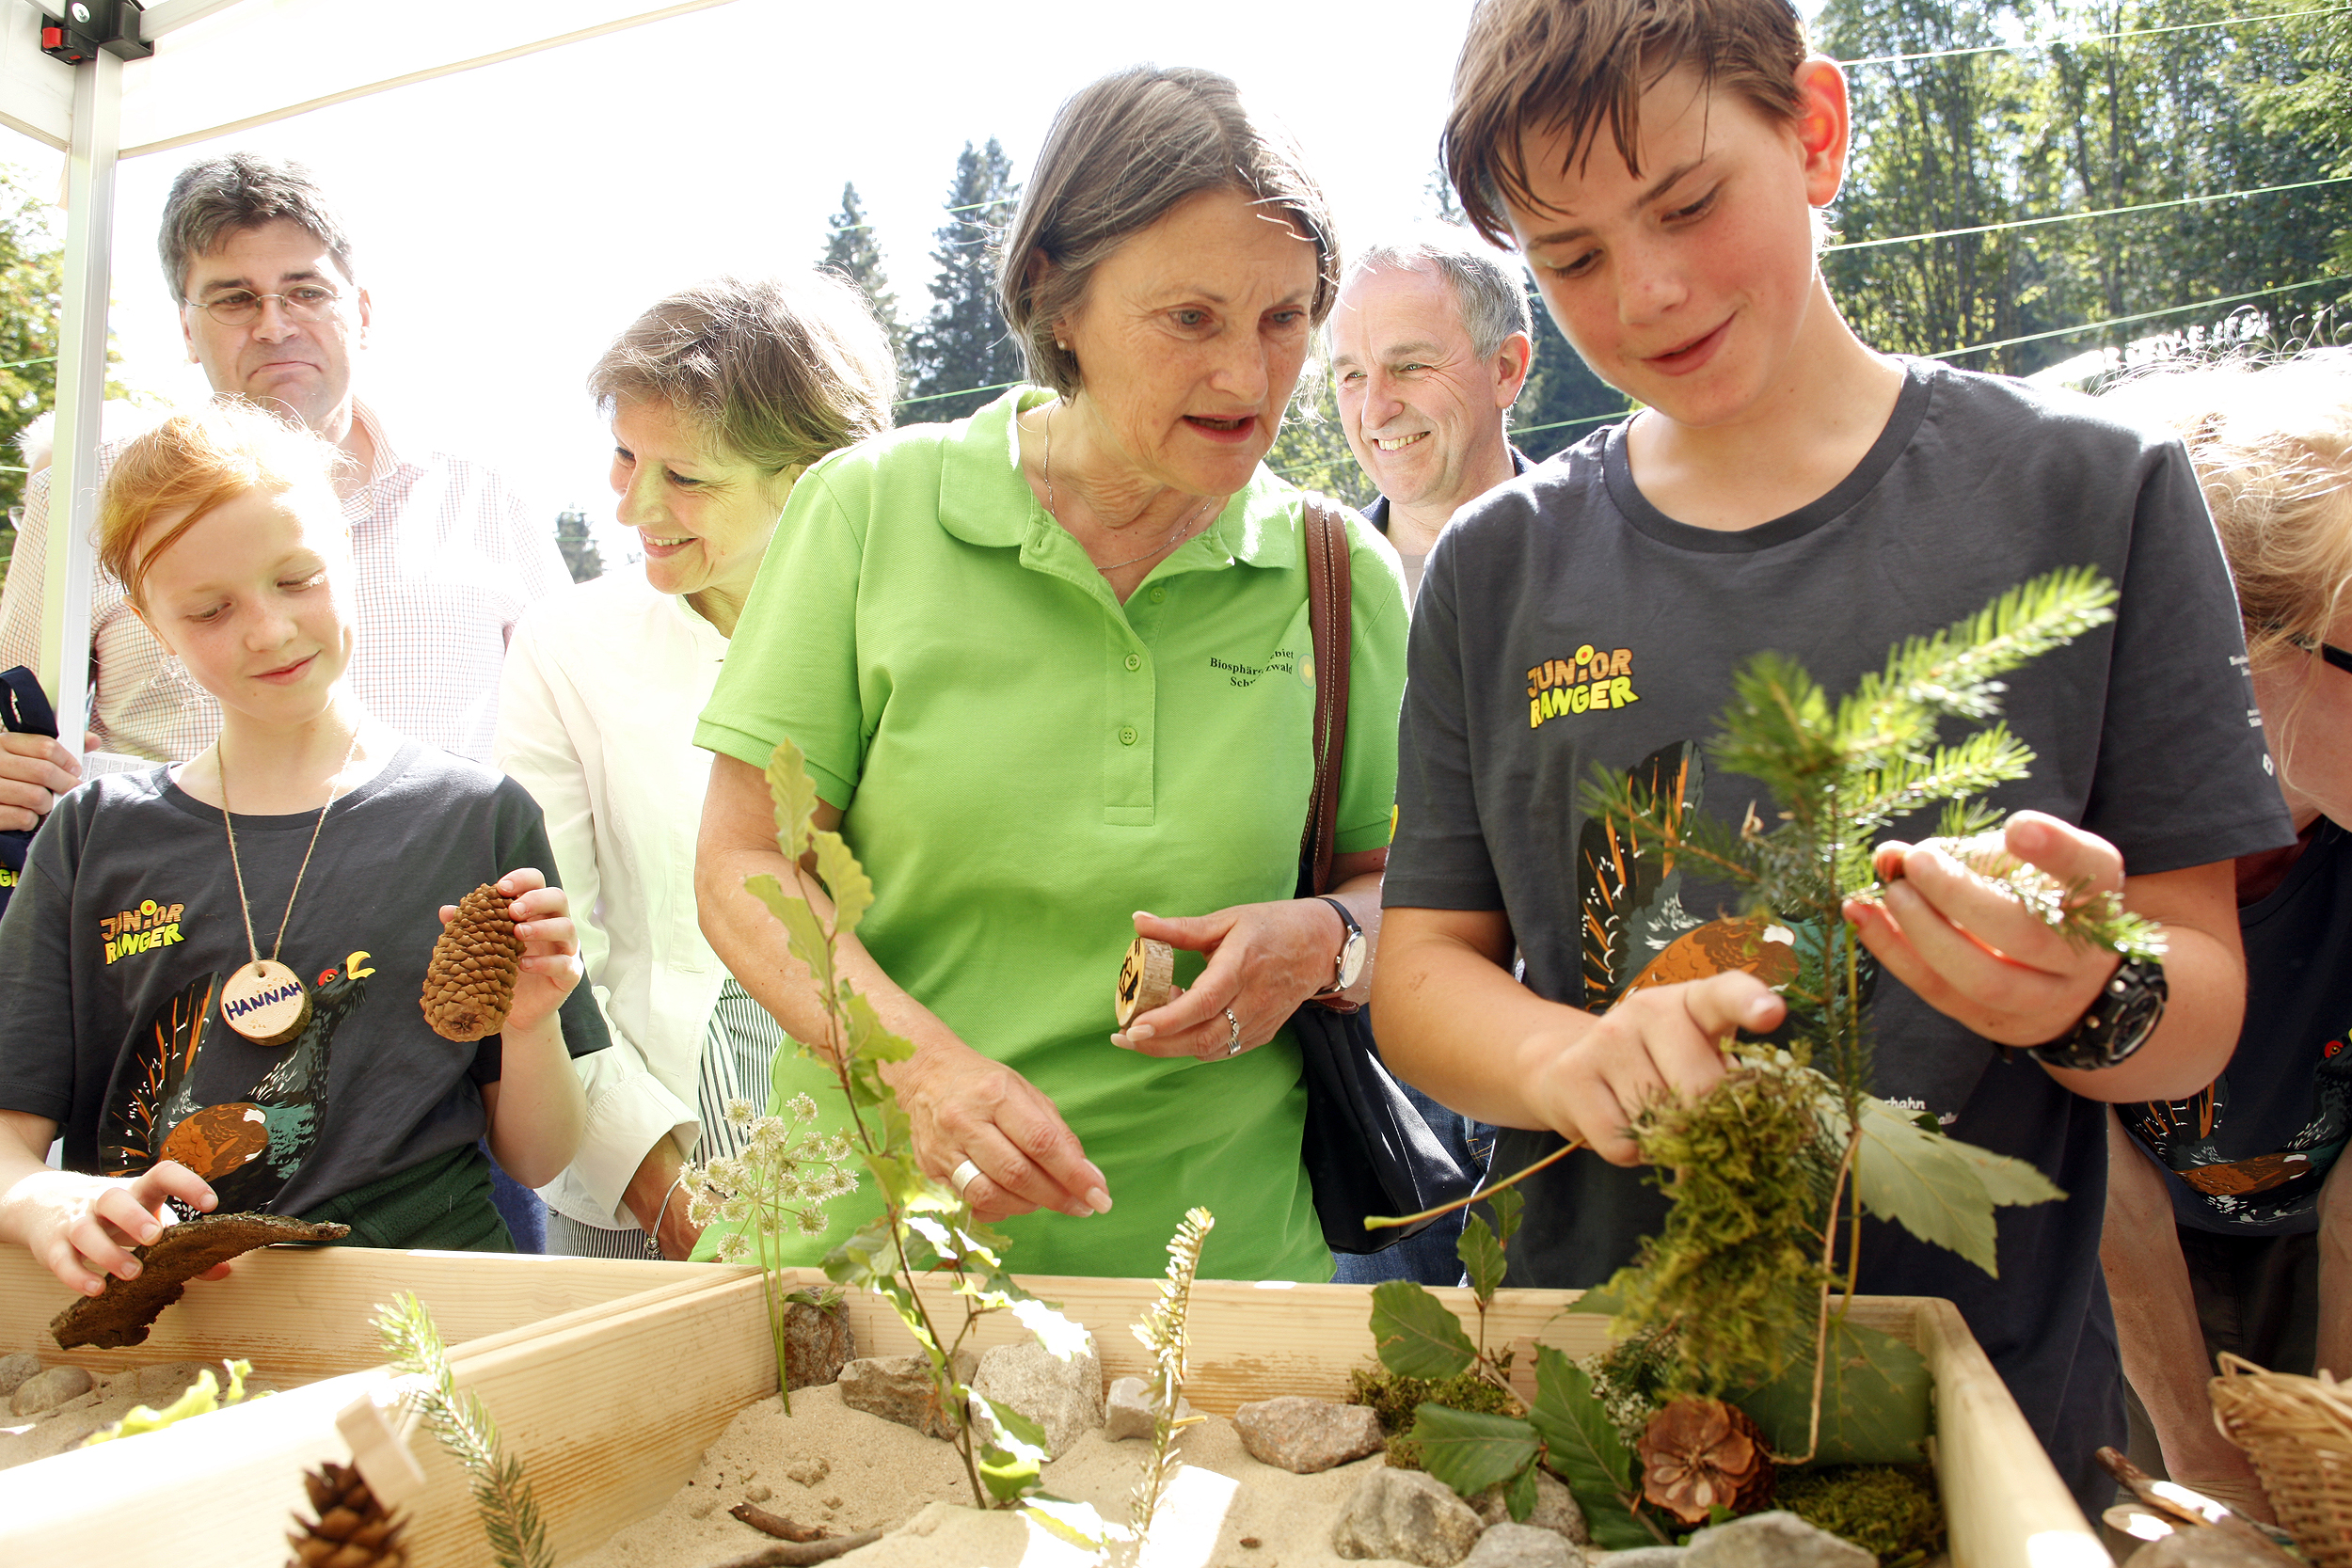 Mit Begeisterung für Natur und Umwelt: Rund 200 Kinder beim bundesweiten Junior-Ranger-Treffen in Bernau